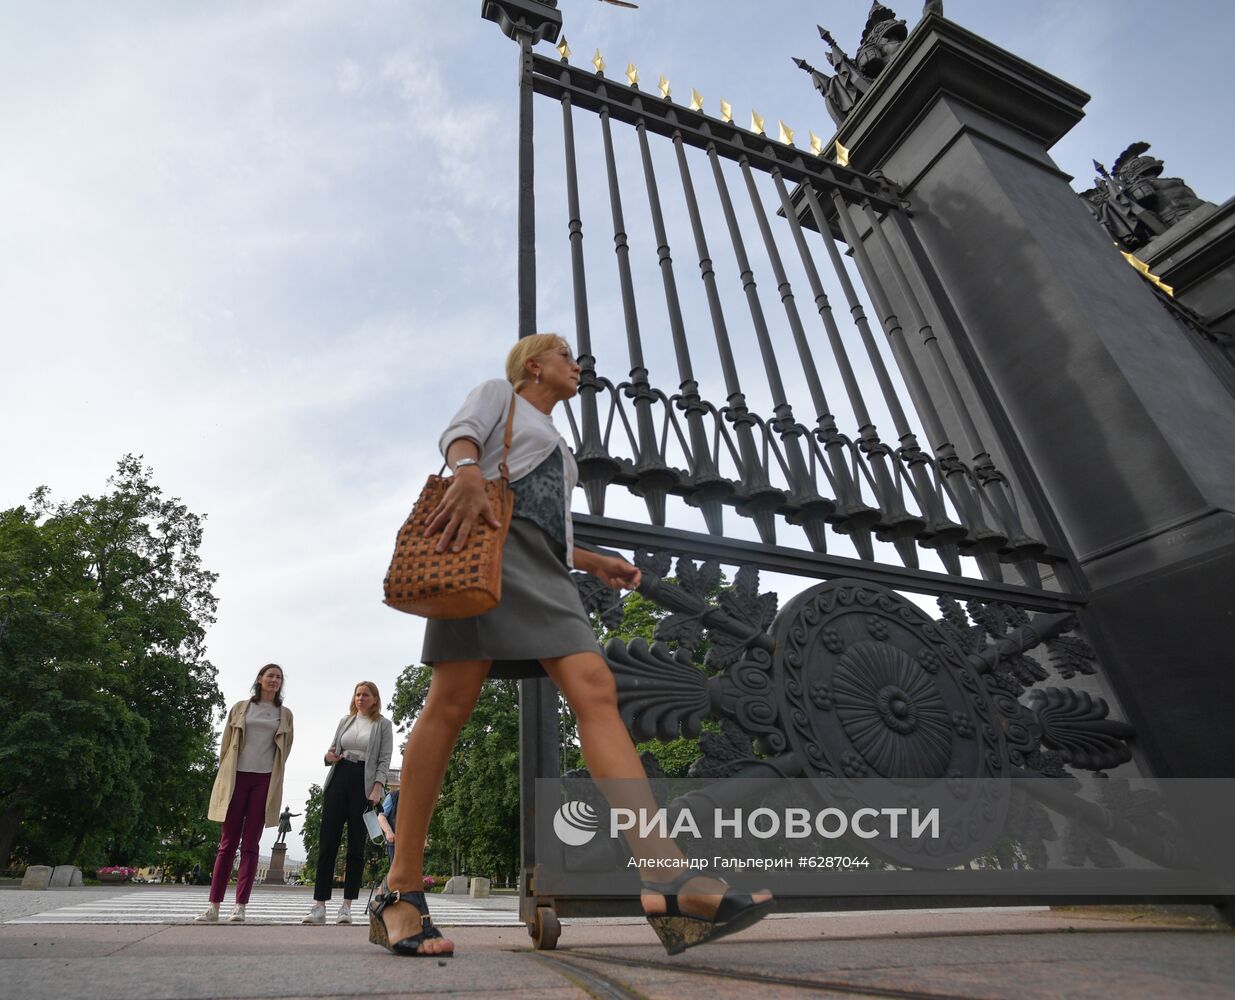 Русский музей возобновил работу после карантина